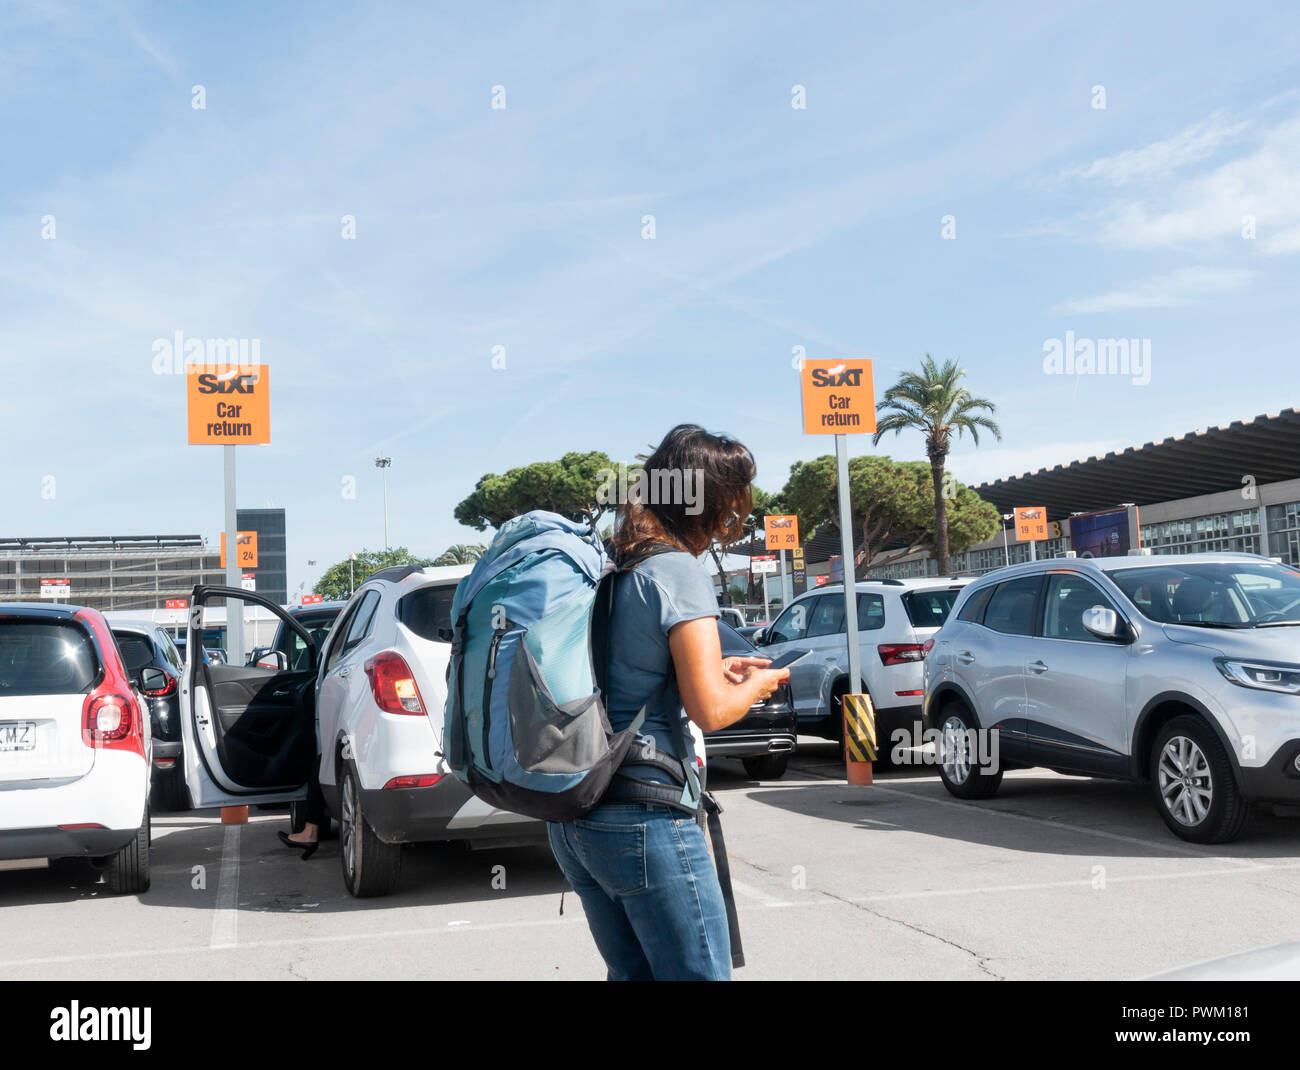 Weibliche Touristen herauf Mietwagen von Sixt Autovermietung compound am Flughafen Barcelona. Spanien Stockfoto